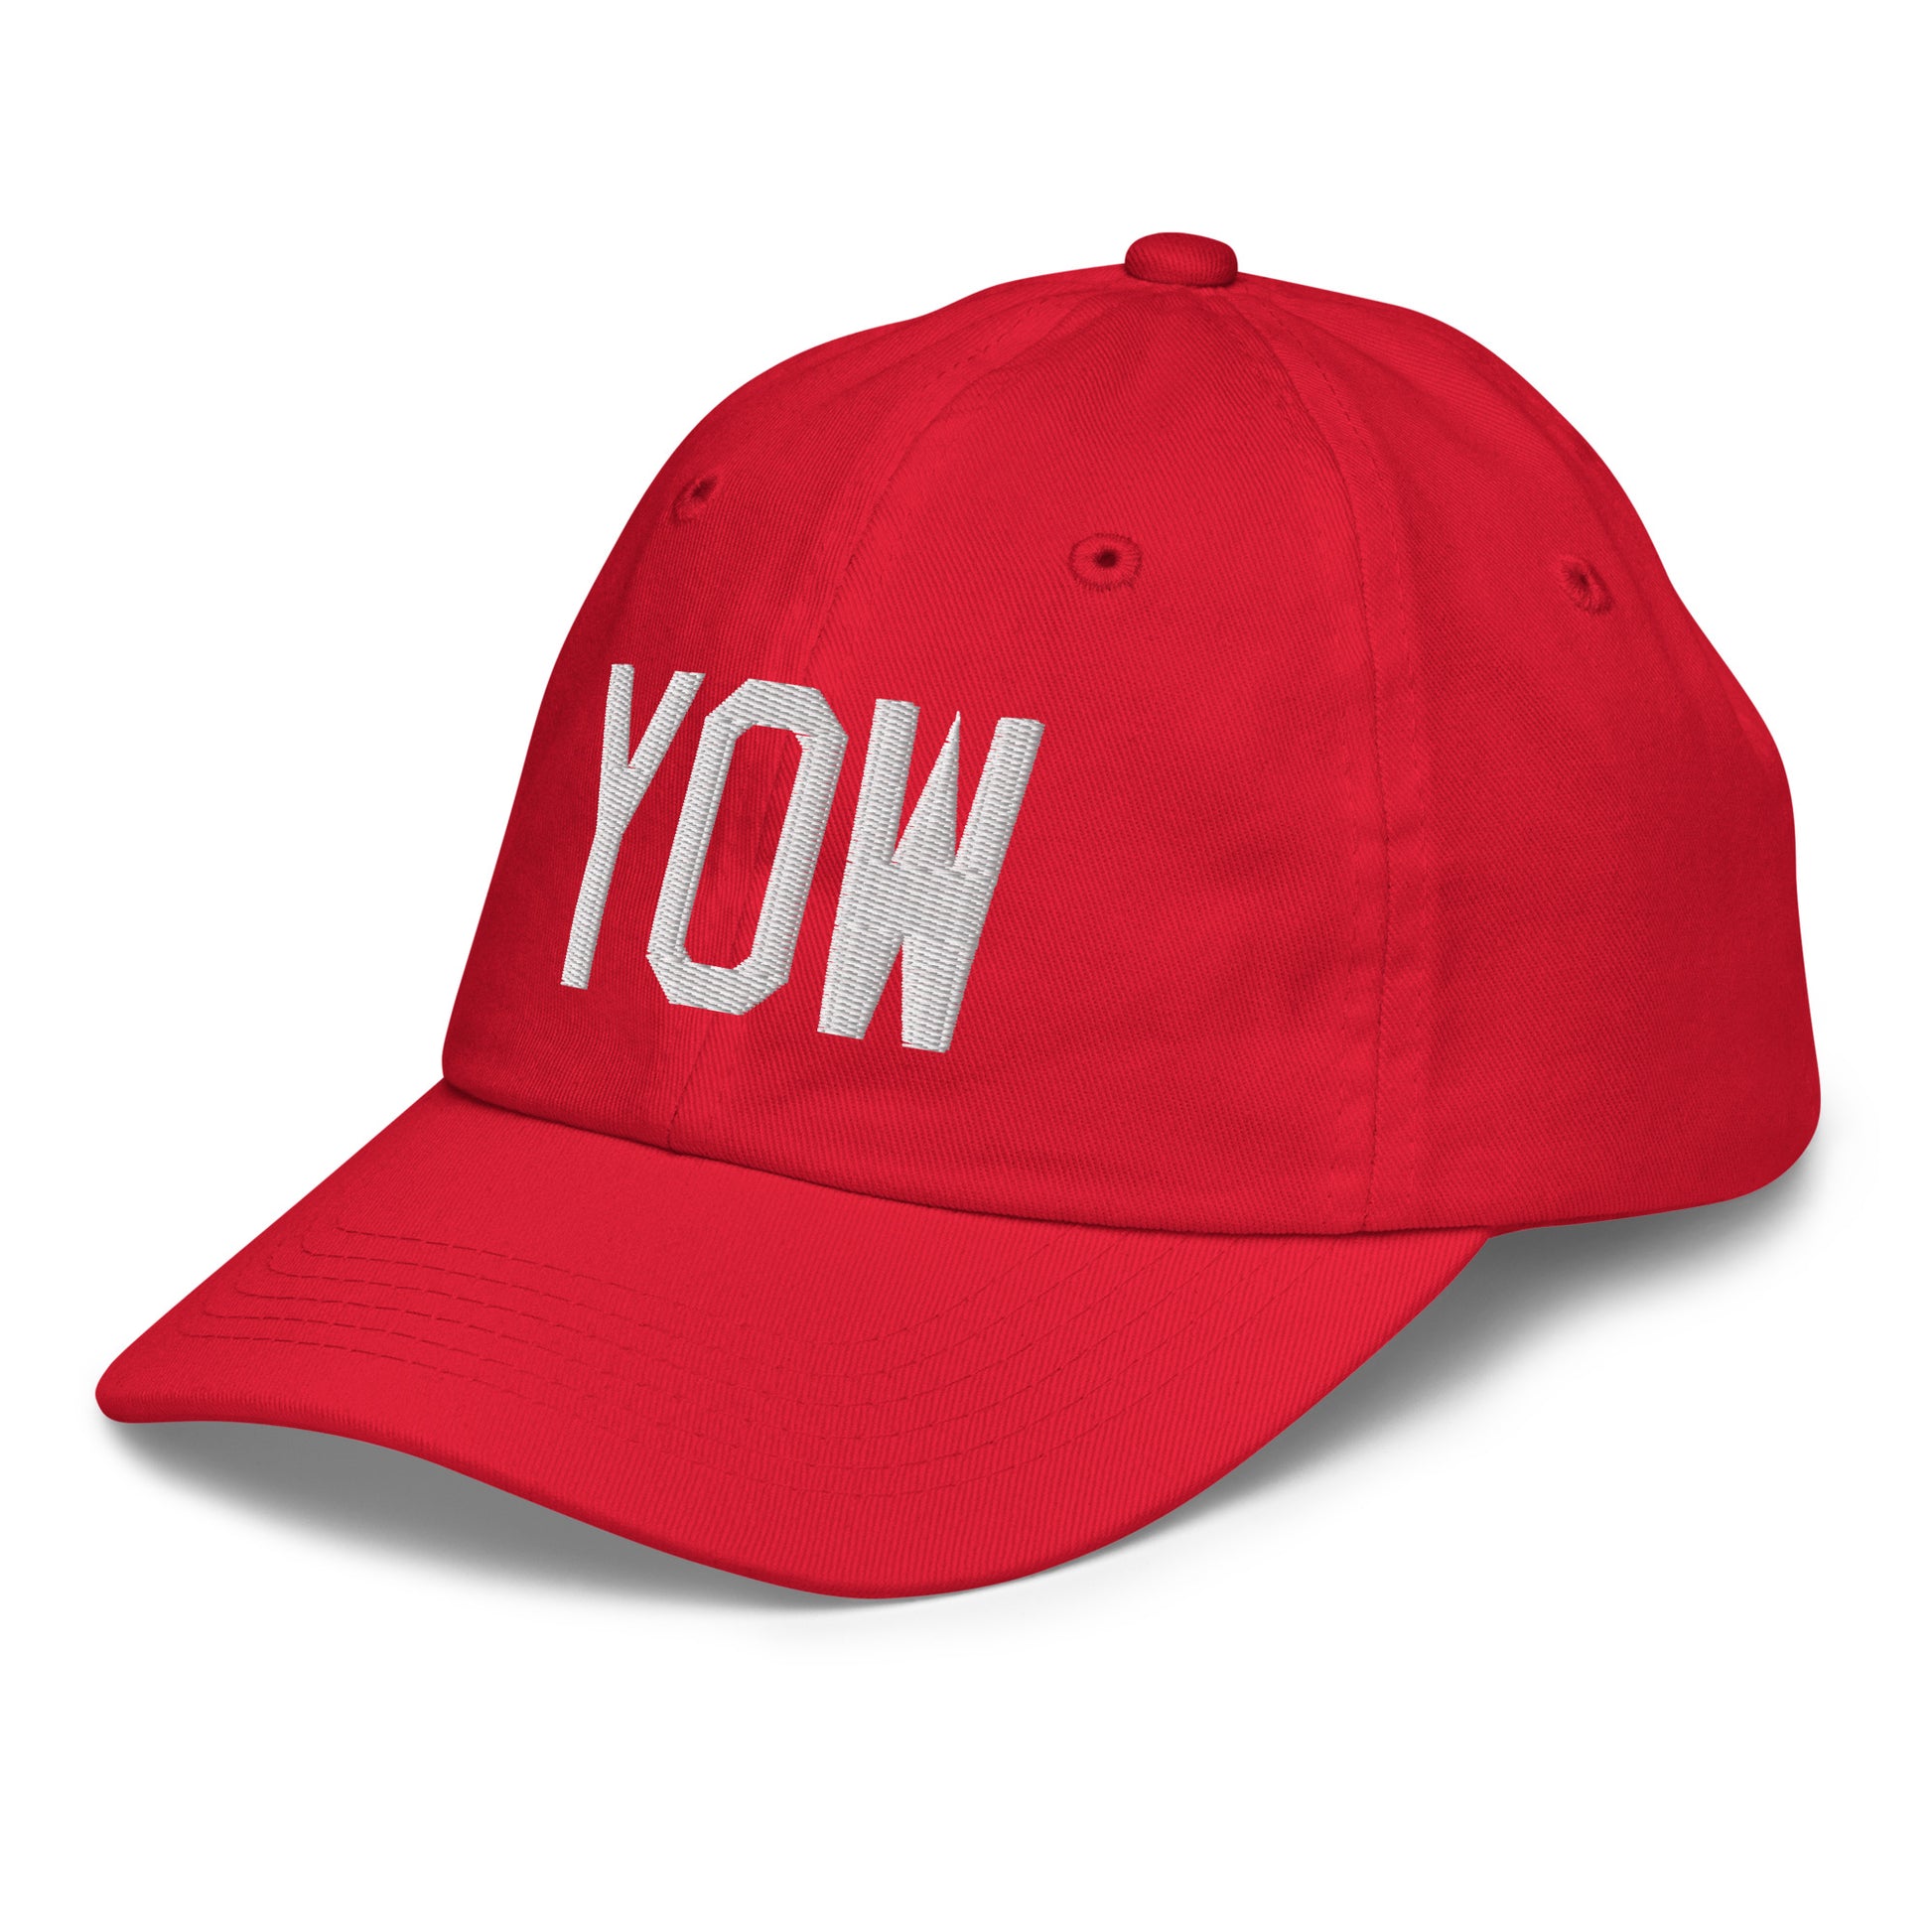 Airport Code Kid's Baseball Cap - White • YOW Ottawa • YHM Designs - Image 19